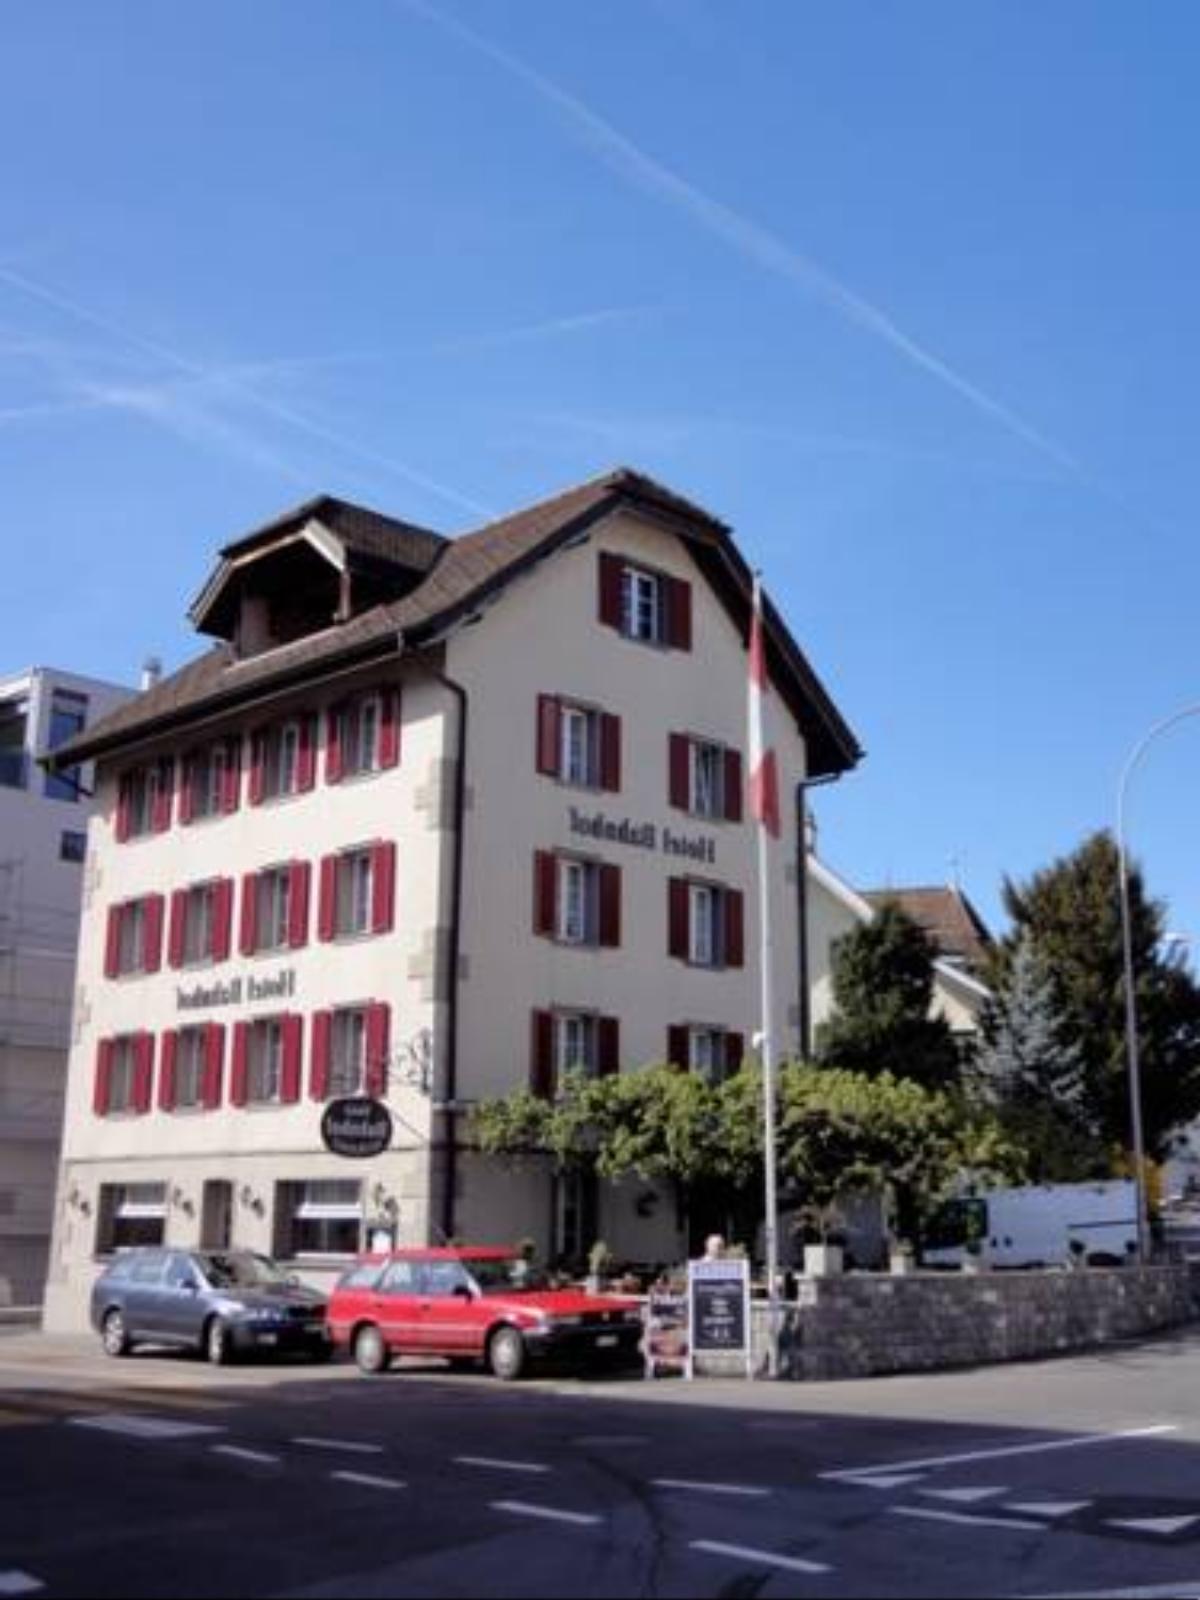 Bahnhöfli Hotel Küssnacht Switzerland